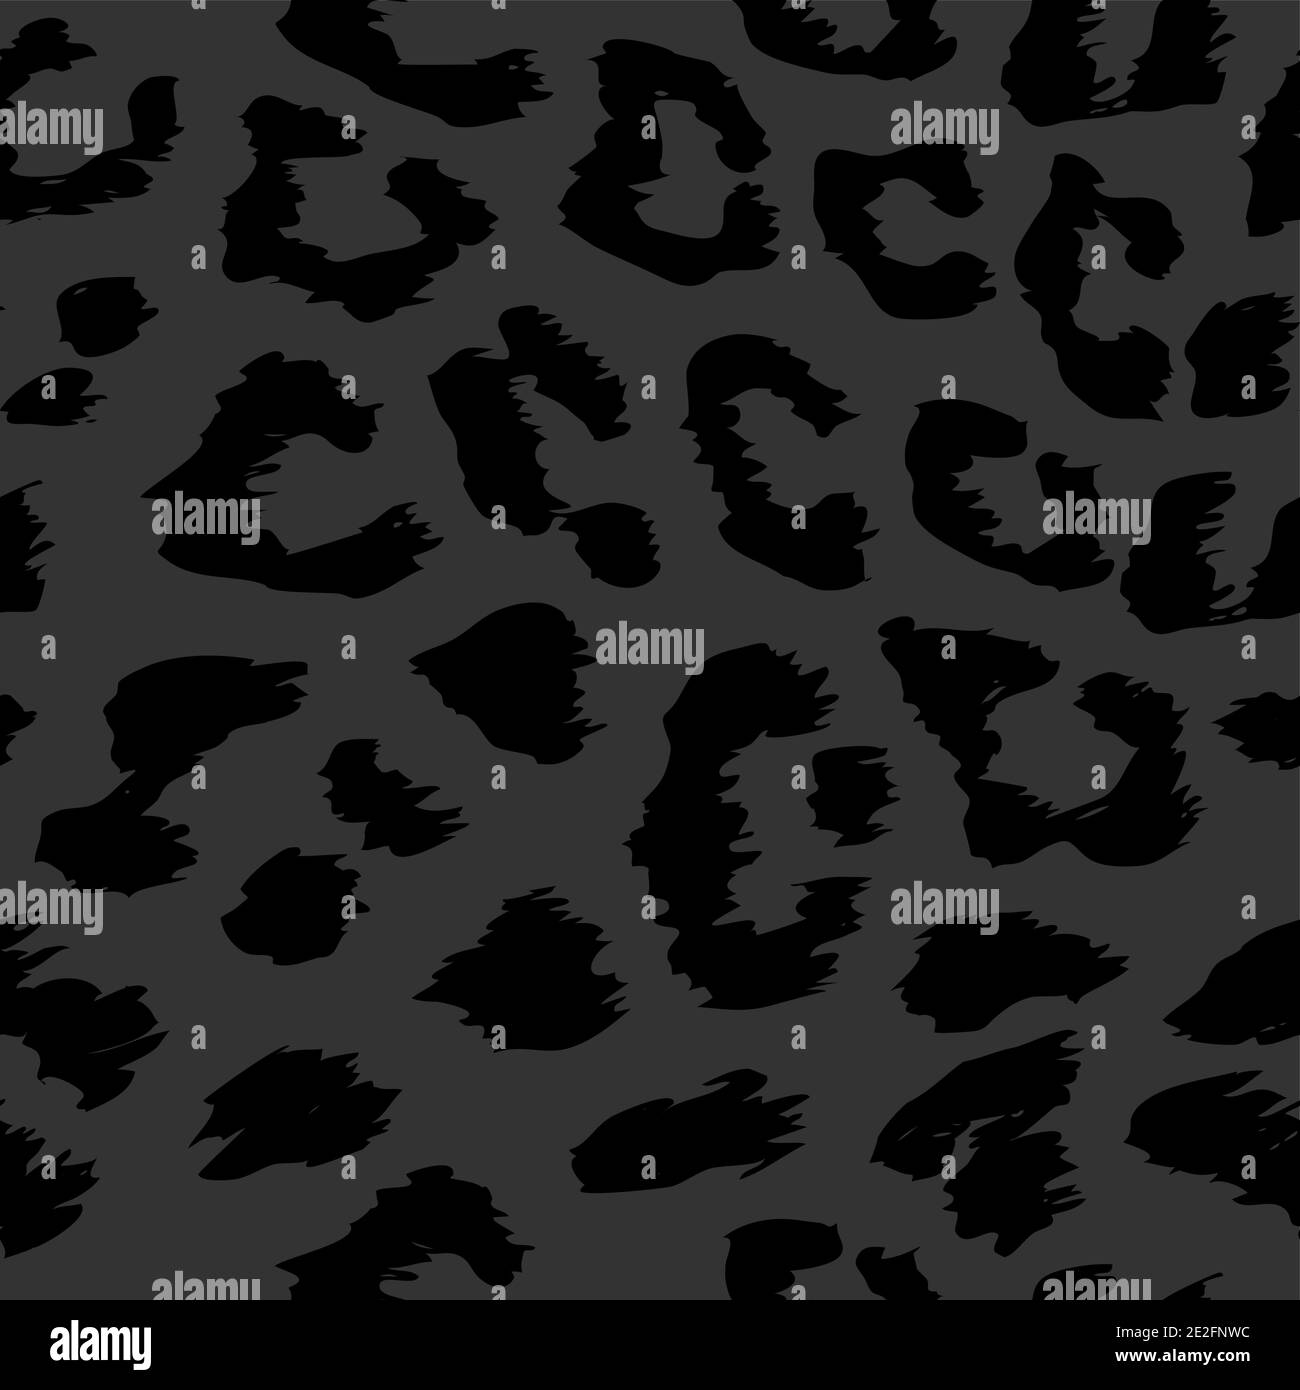 Leopard Muster Design in schwarz und grau Farben - lustige einfarbige Zeichnung nahtlose Muster. Schriftzug Poster oder T-Shirt Textil Grafik-Design. Wallp Stock Vektor